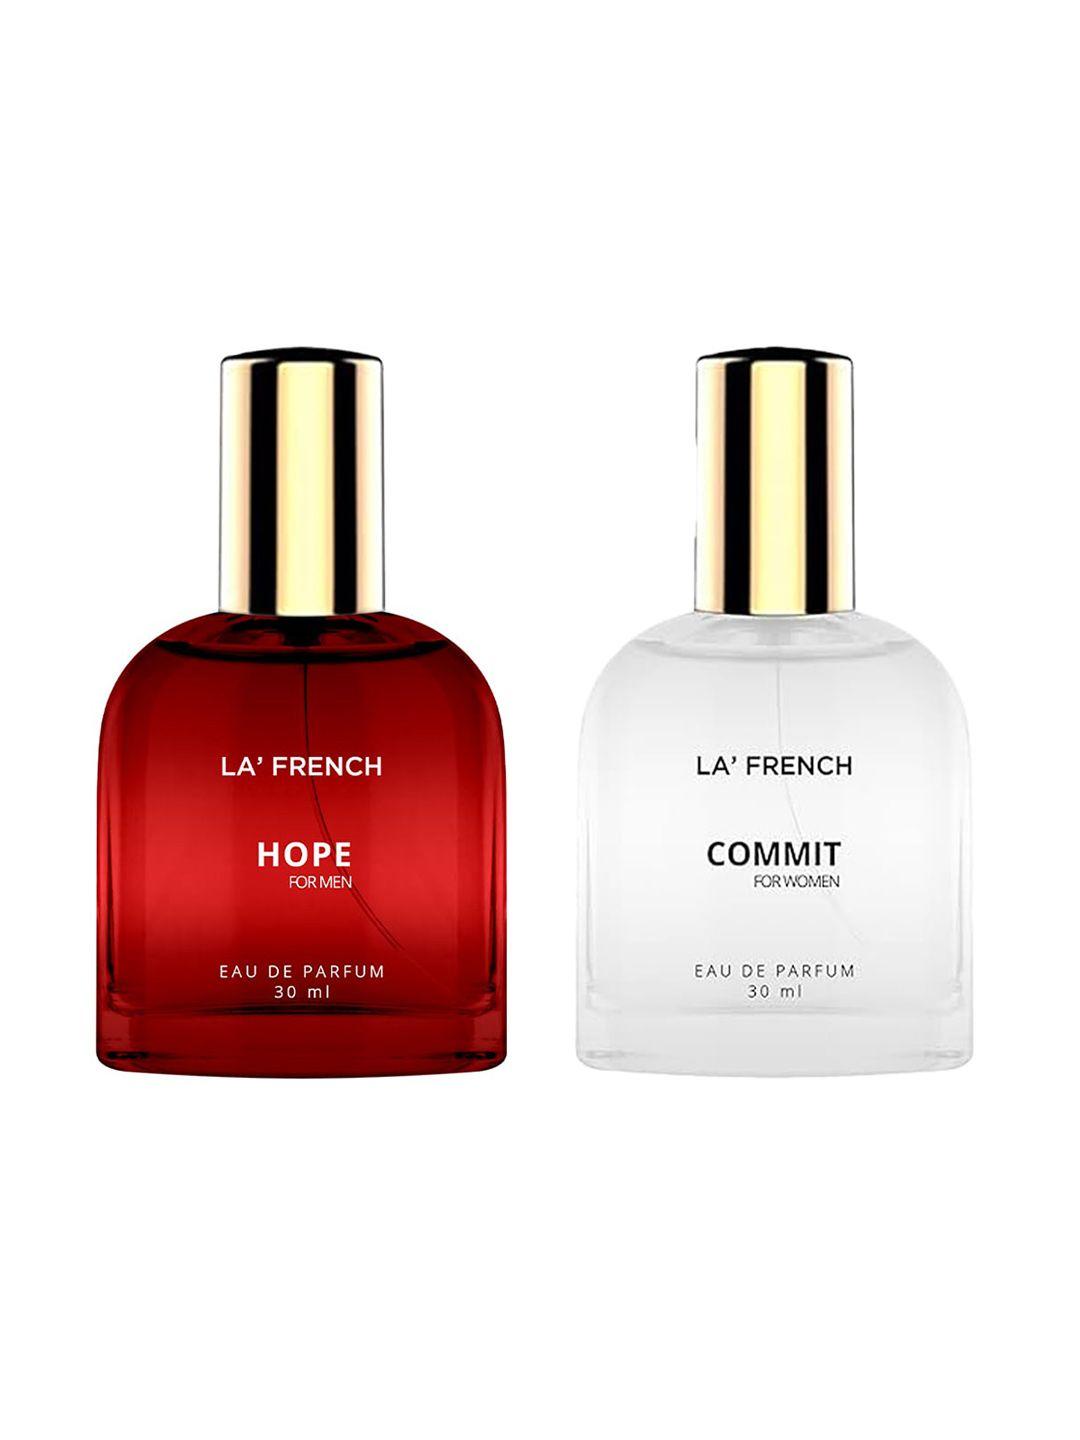 la french set of 2 eau de parfum 30ml each - hope & commit